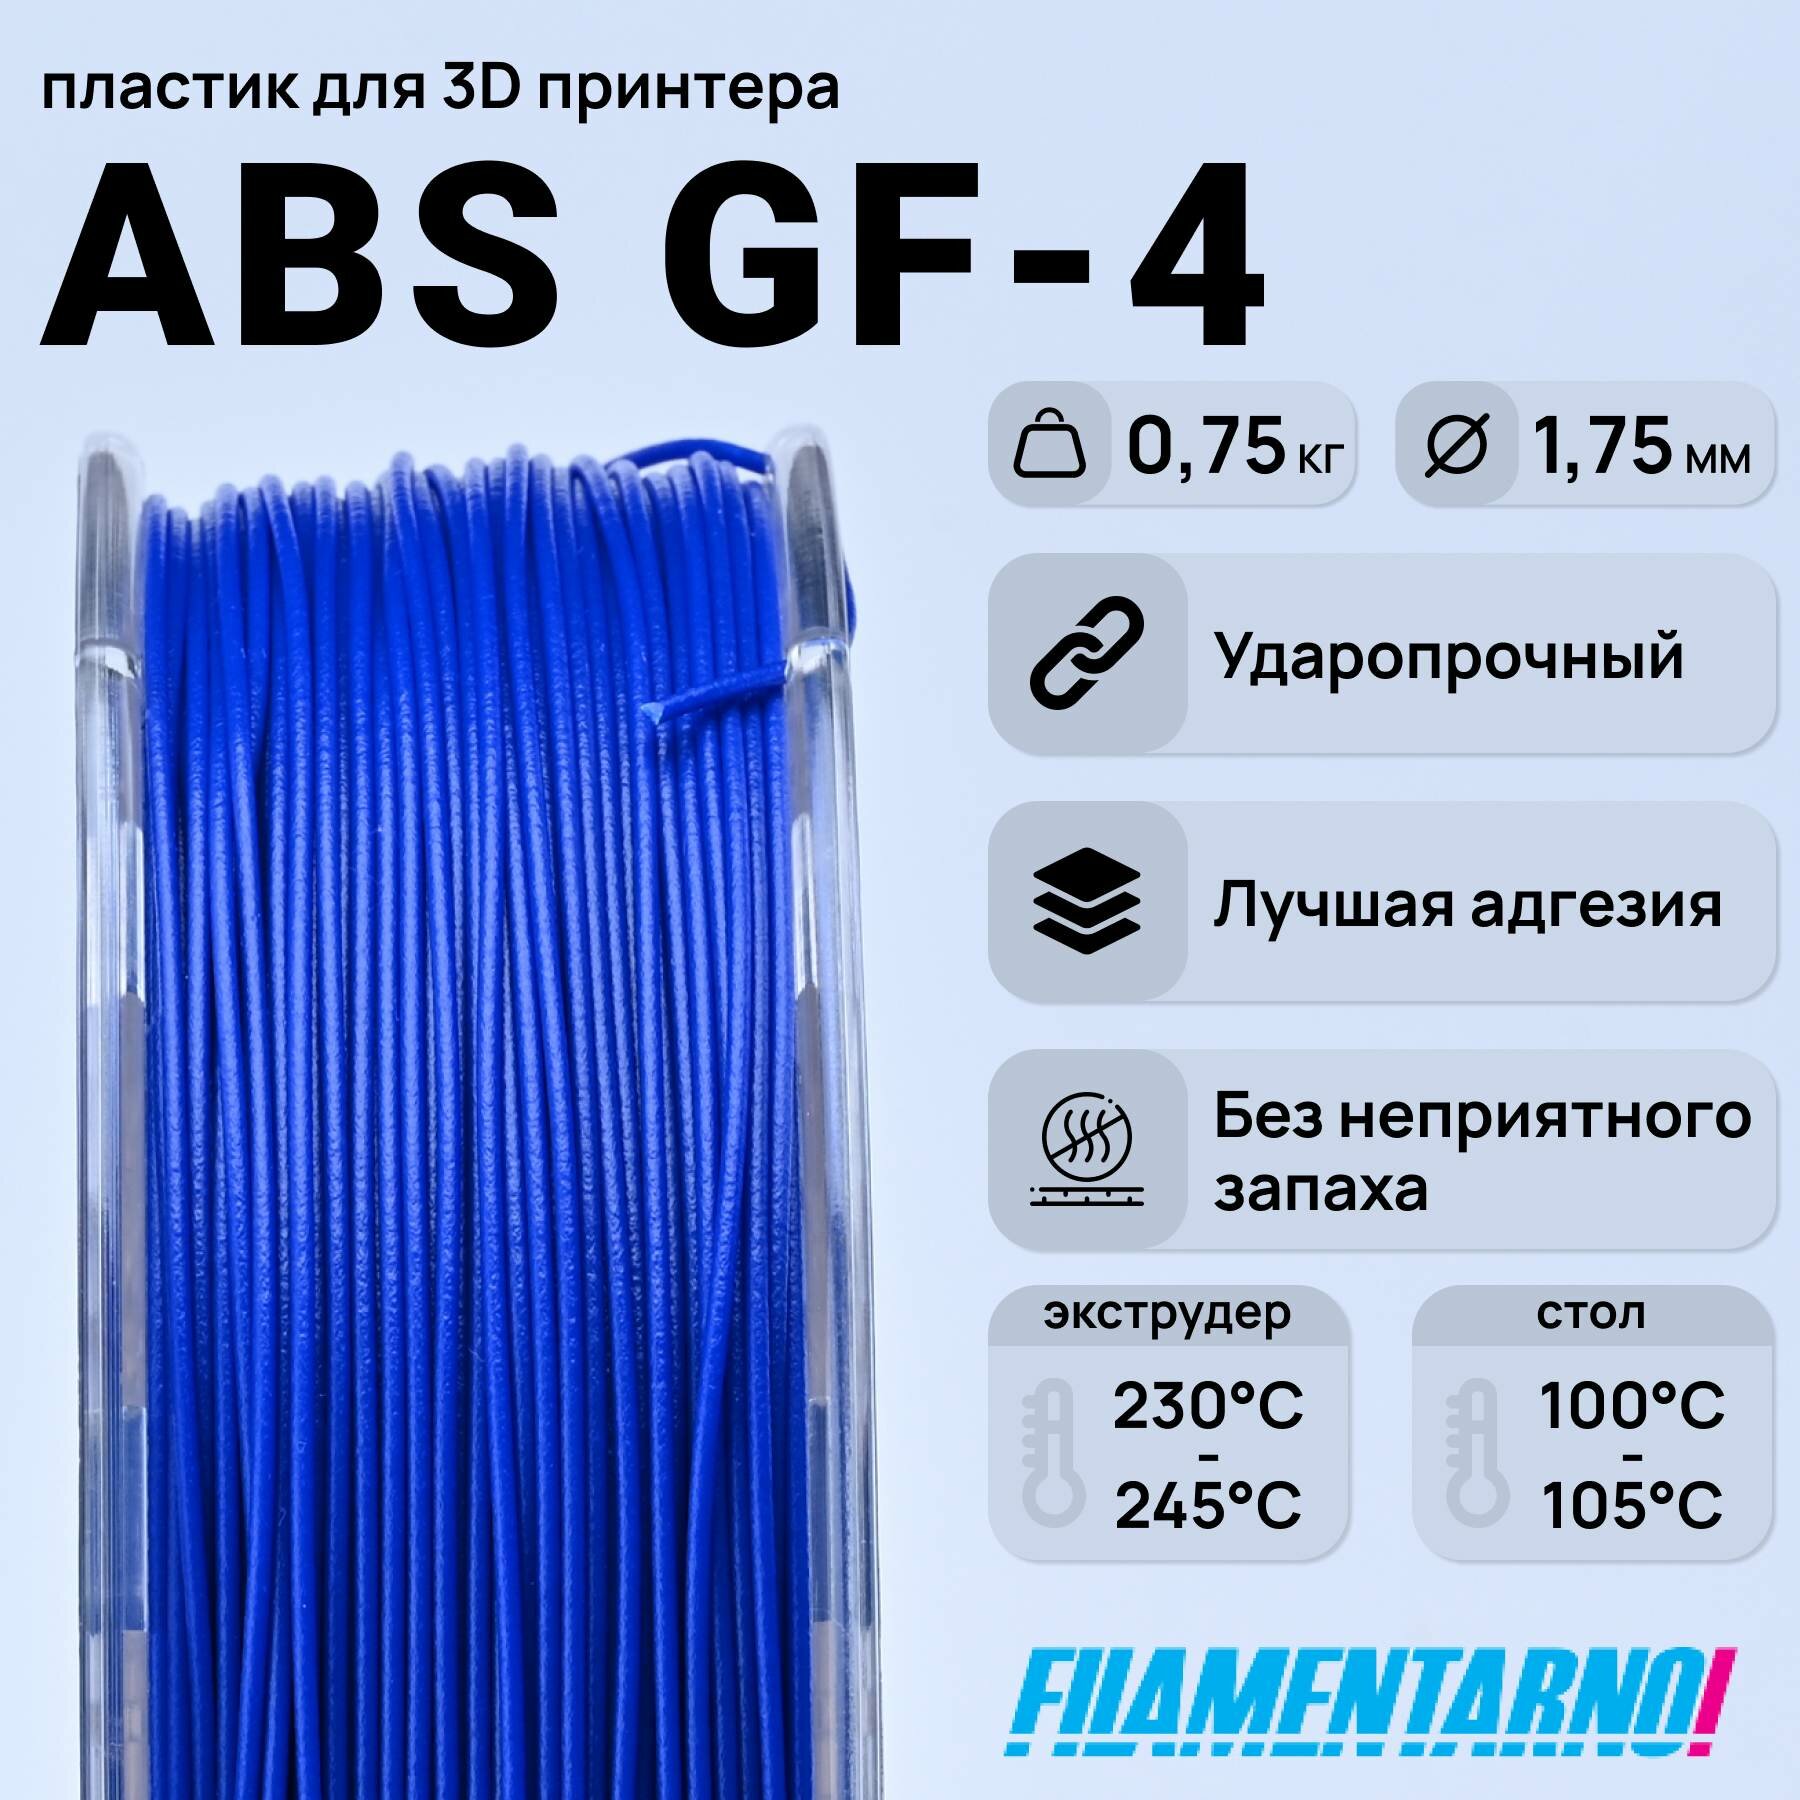 ABS GF-4  750 , 1,75 ,  Filamentarno  3D-